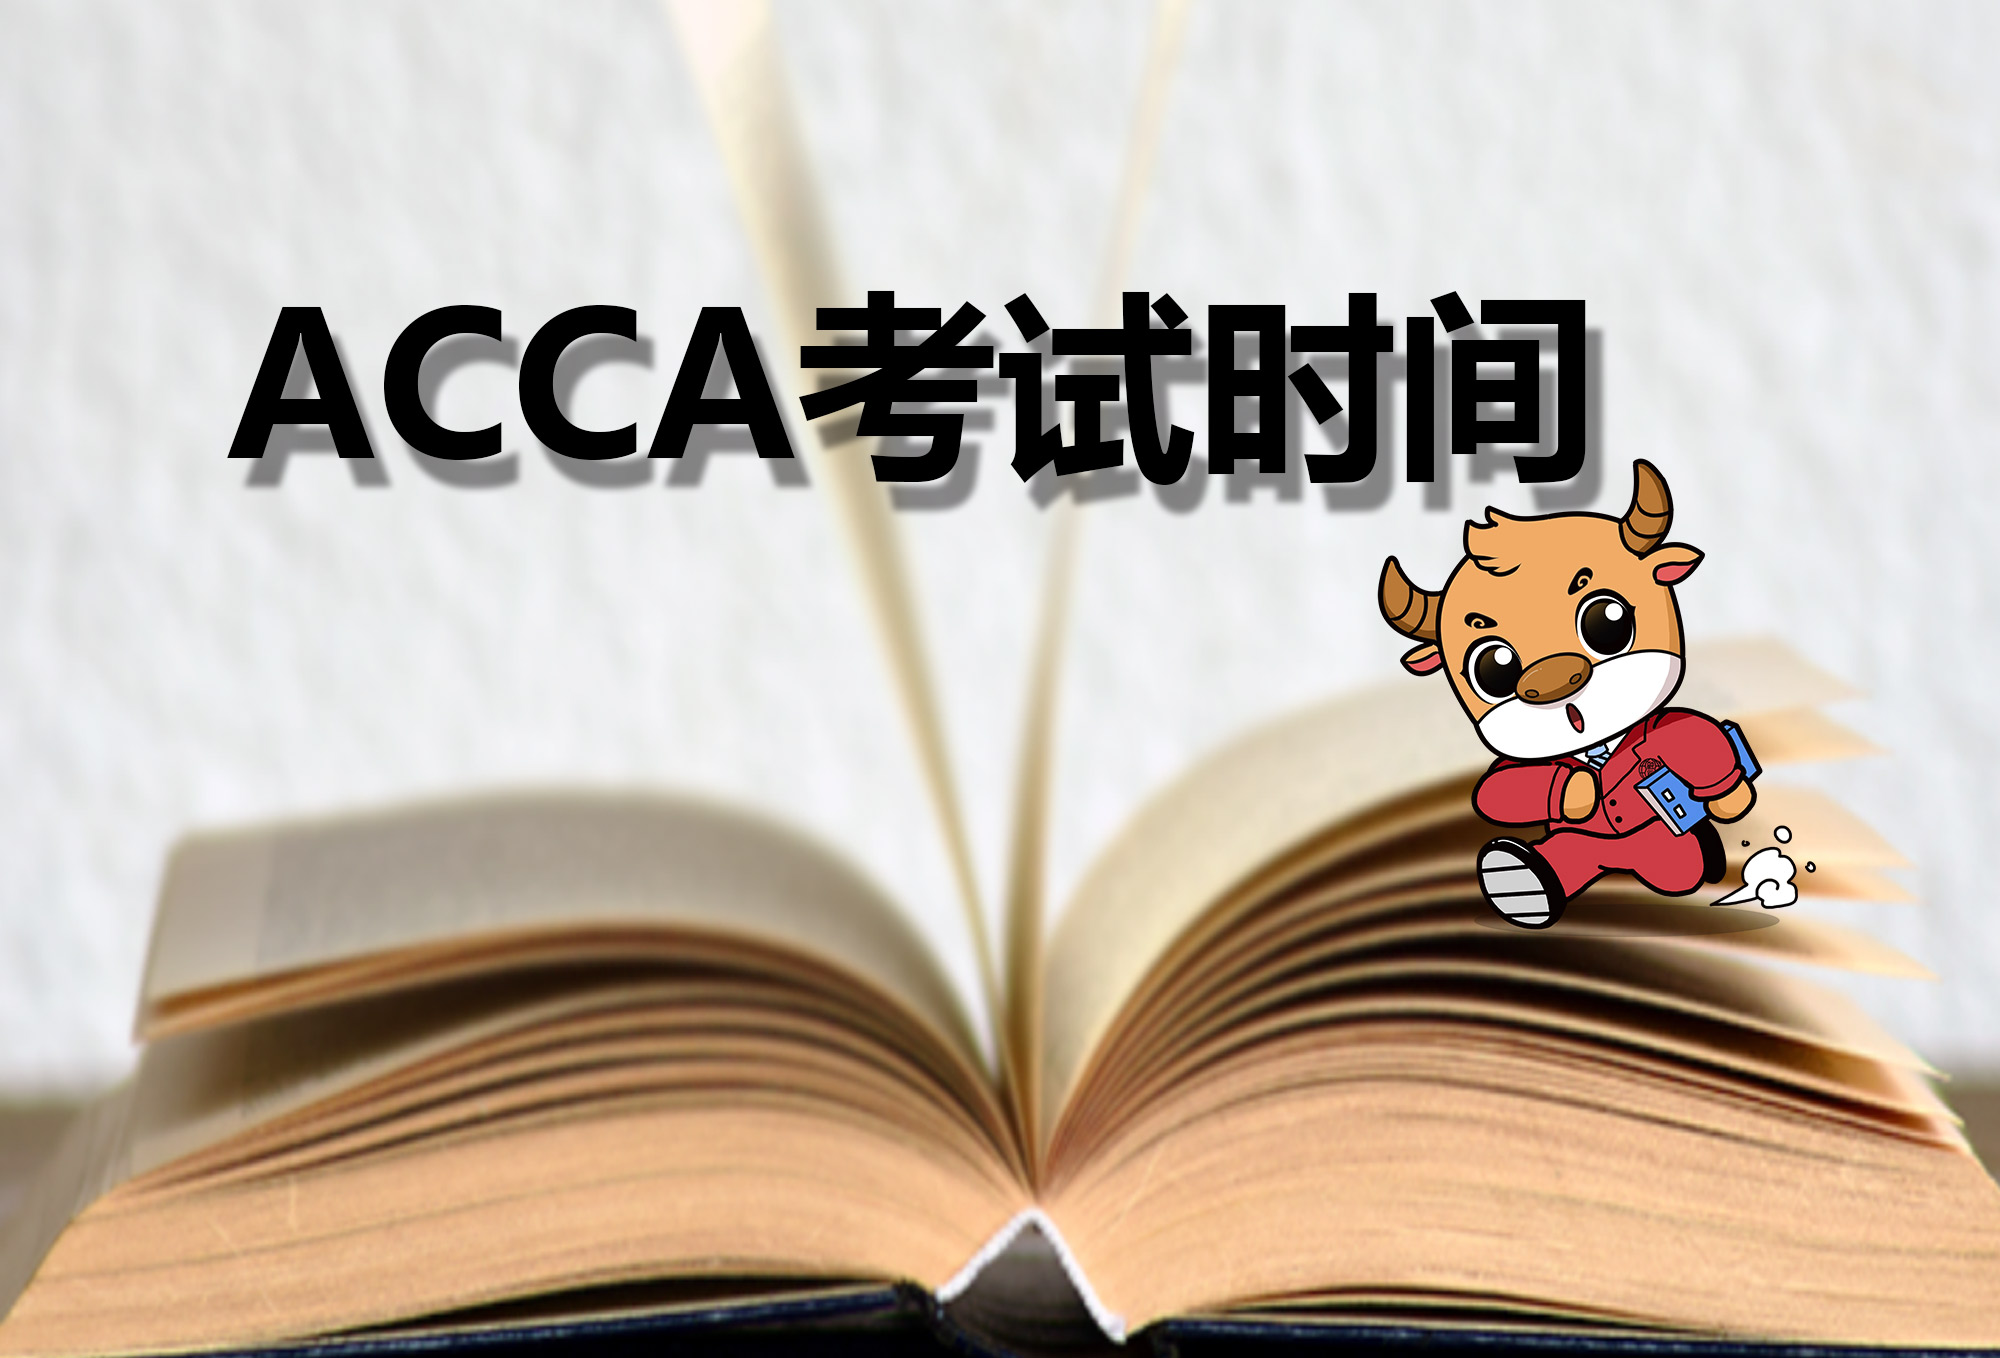 报名参加ACCA考试前学员了解的事情有哪些？